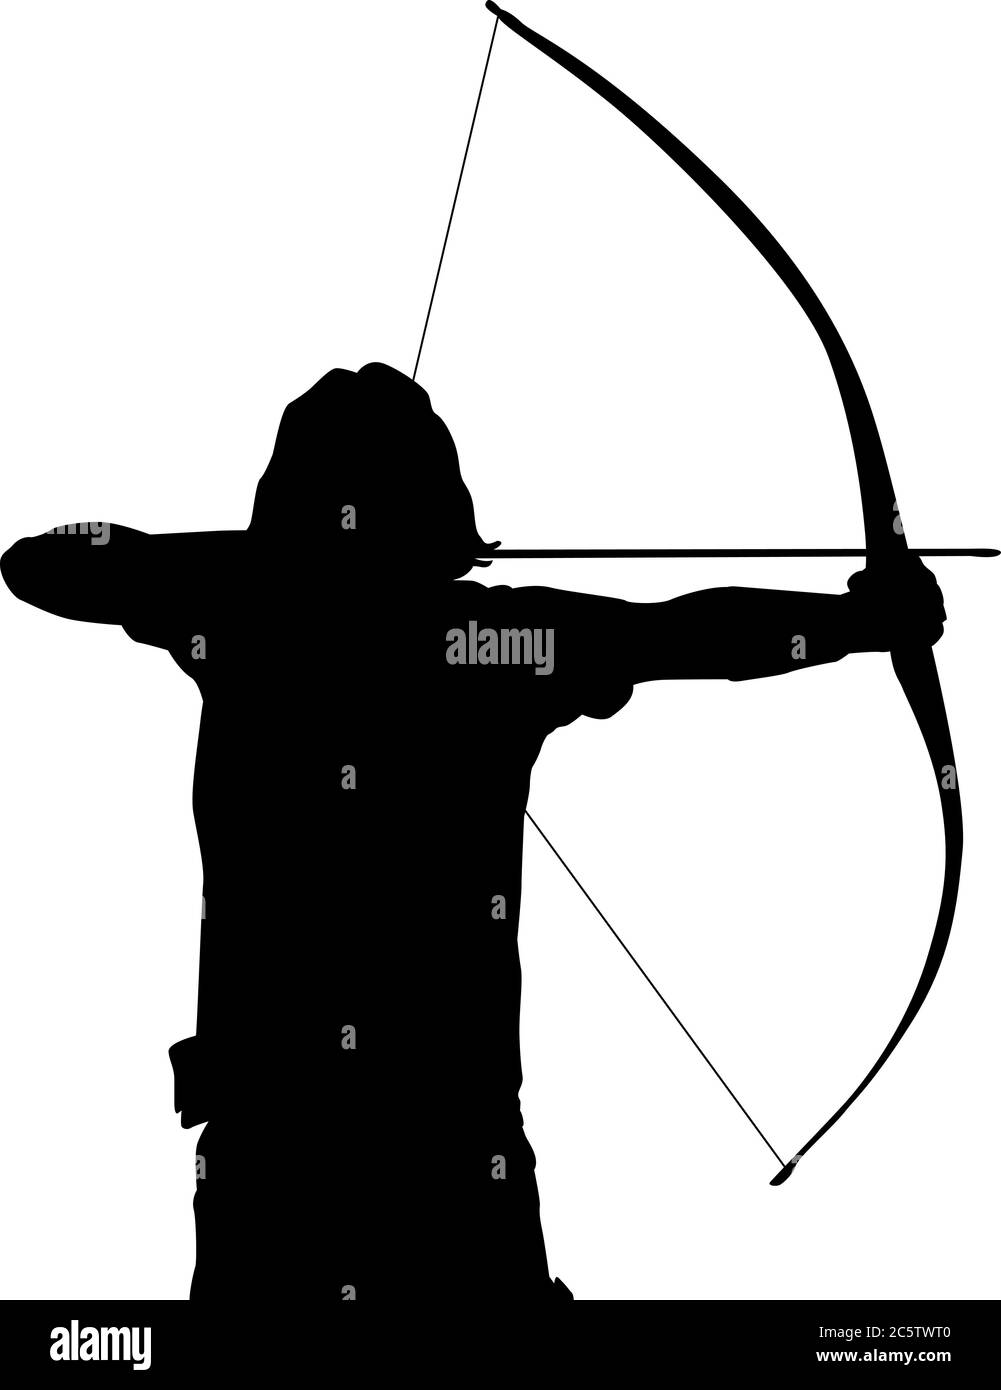 Silueta de un arquero masculino con un arco largo Ilustración del Vector